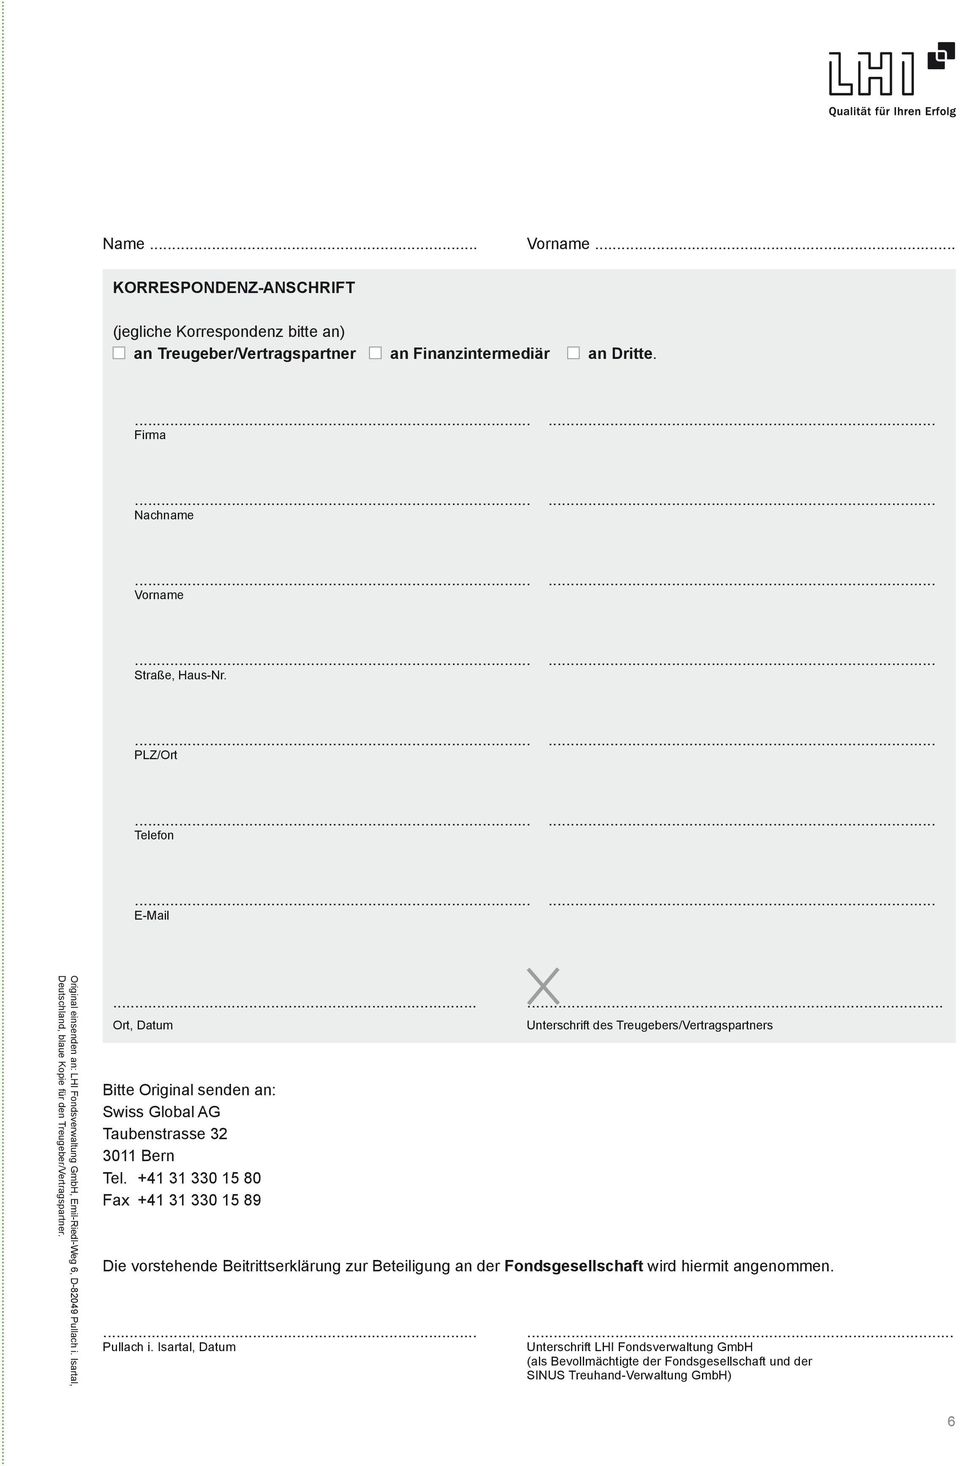 ..... Unterschrift des Treugebers/Vertragspartners Bitte Original senden an: Swiss Global AG Taubenstrasse 32 3011 Bern Tel.